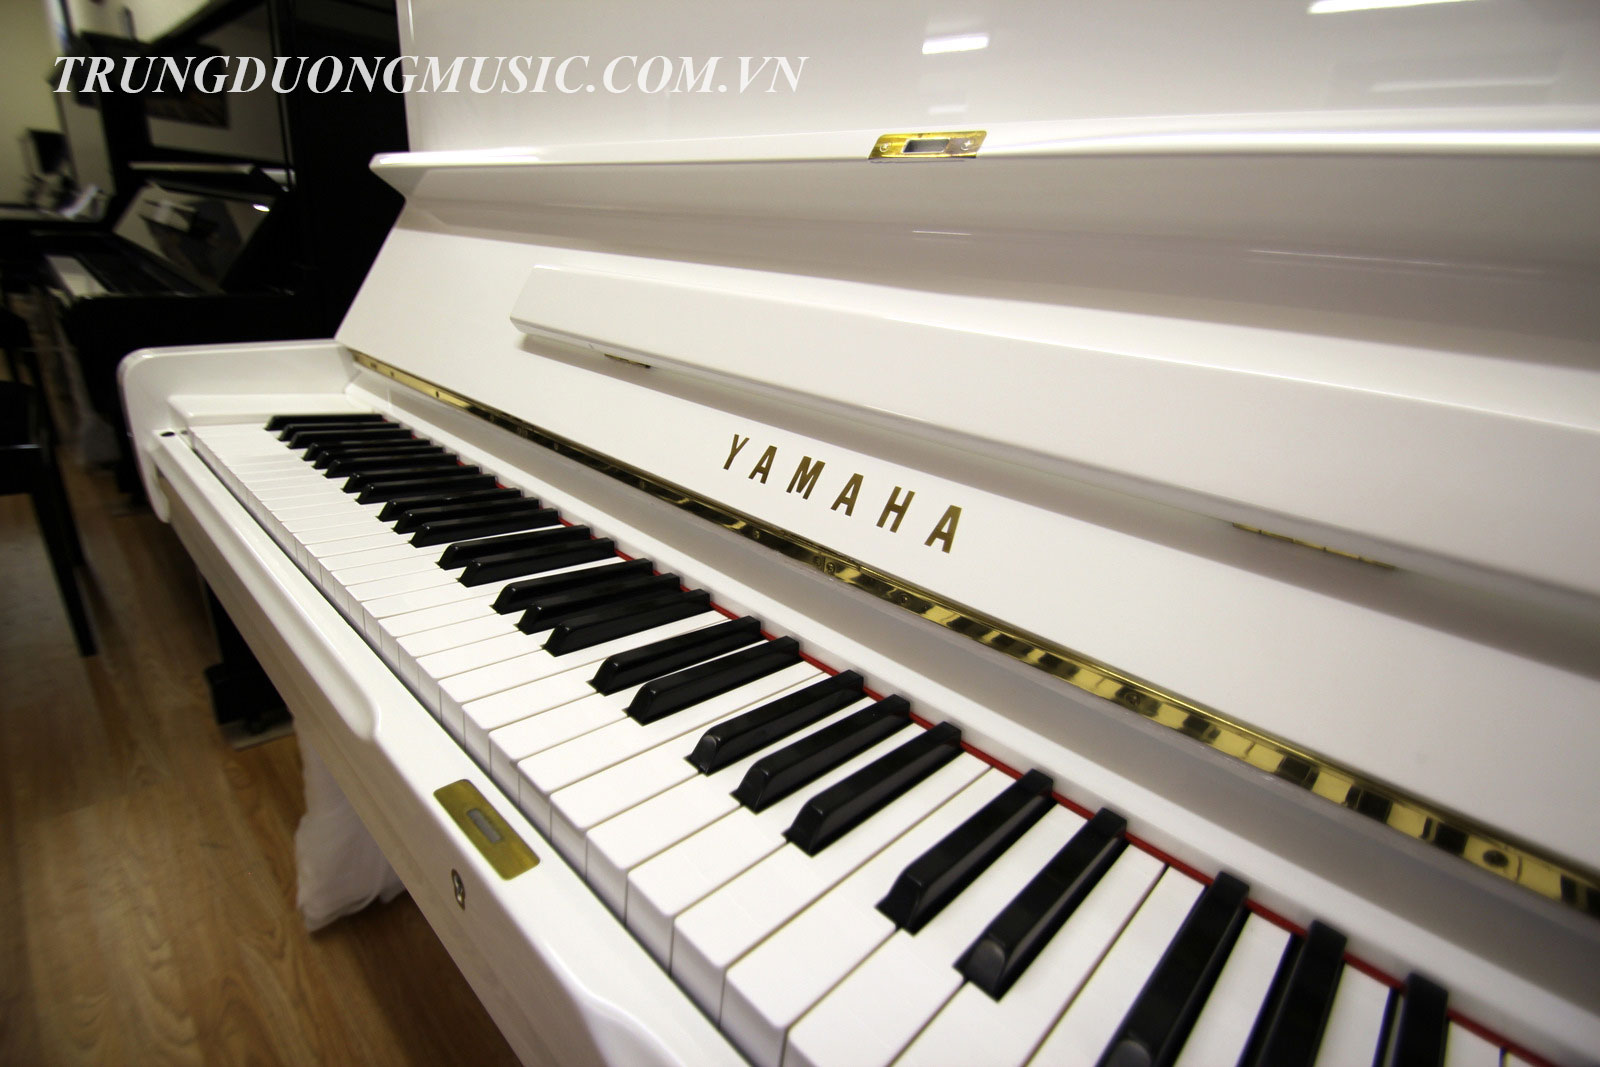 Cho bạn nơi bán đàn piano yamaha lựa chọn phù hợp sử dụng.